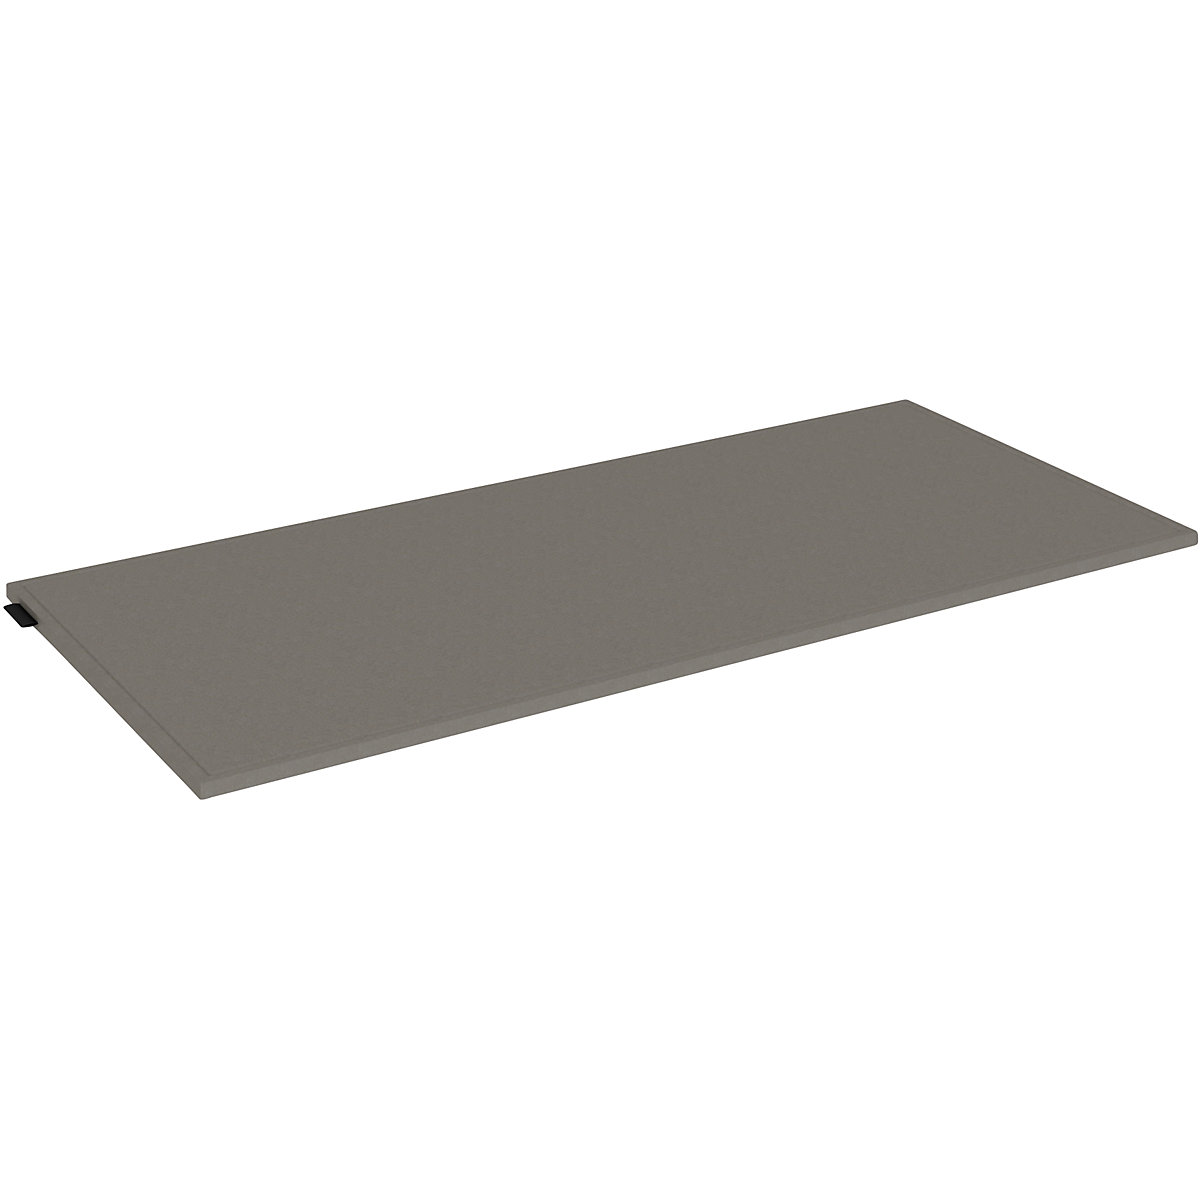 Cuscino in feltro per box singolo – mauser, larghezza 762 mm, grigio talpa-2